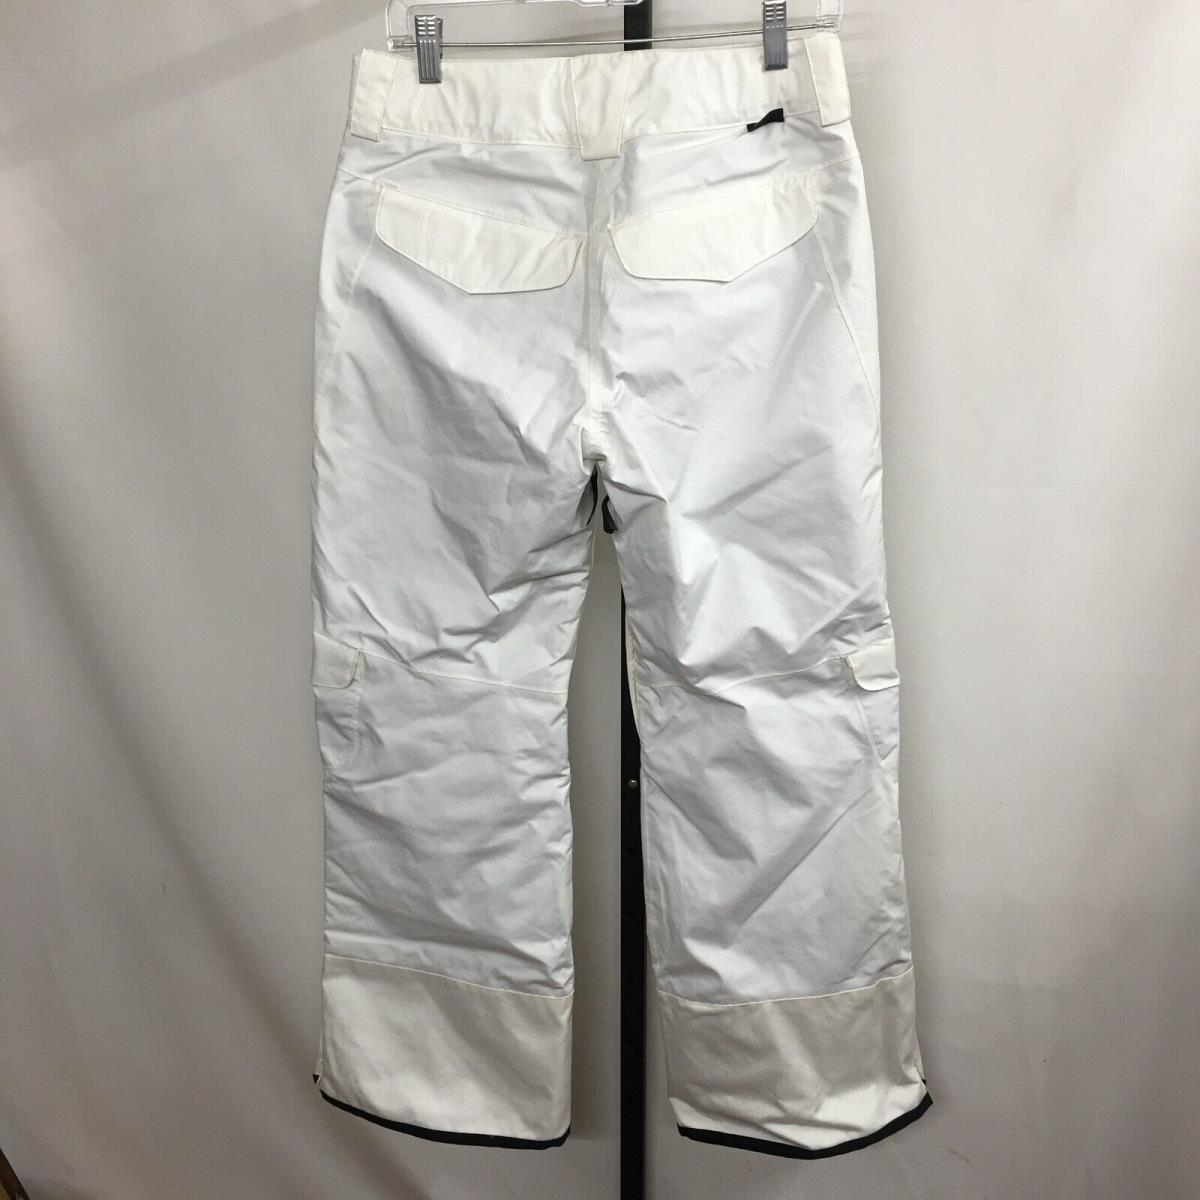 Salomon clothing  - White 5